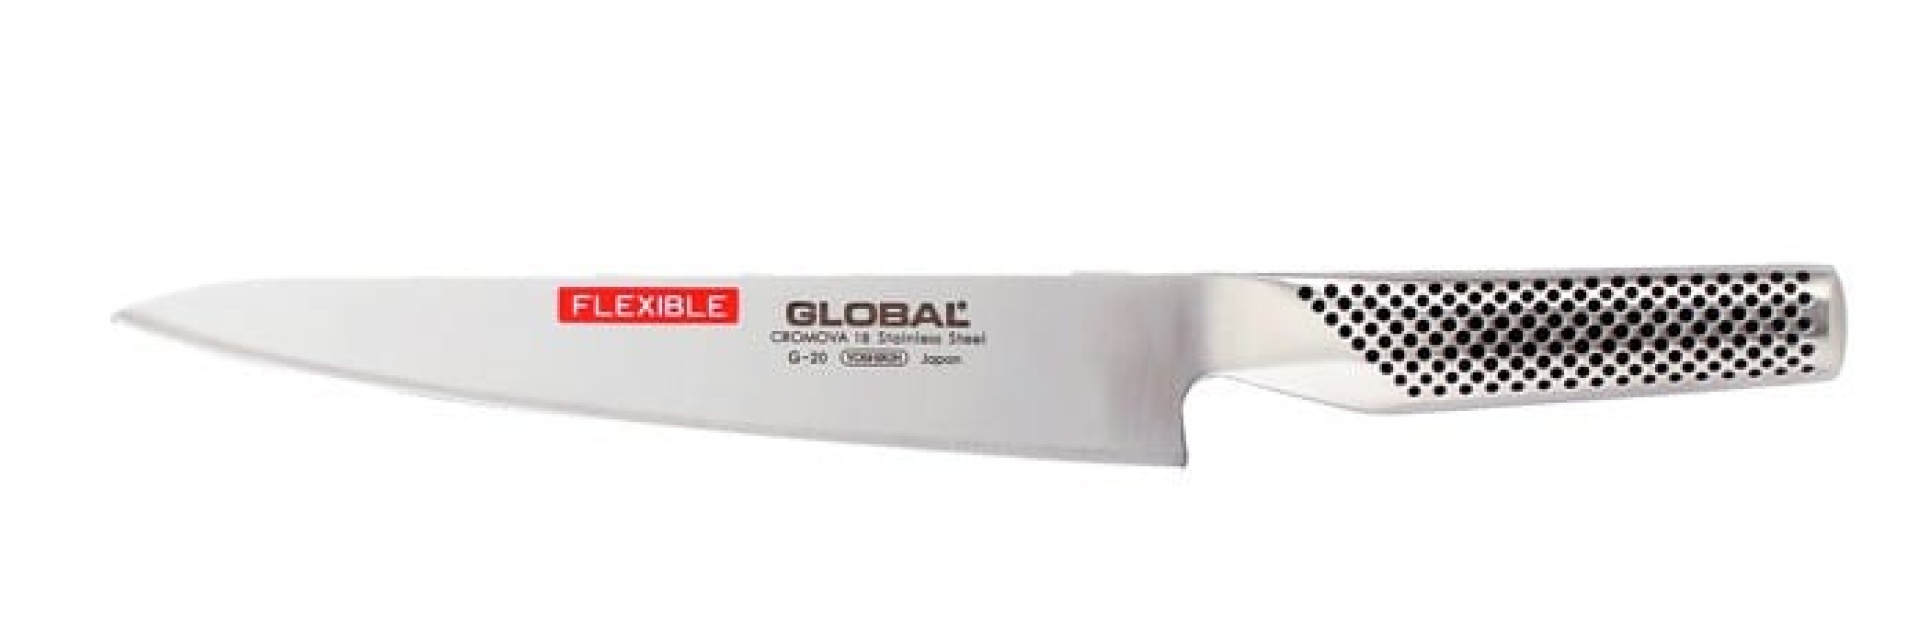 Bred filékniv G-20, 21cm, flexibel - Global